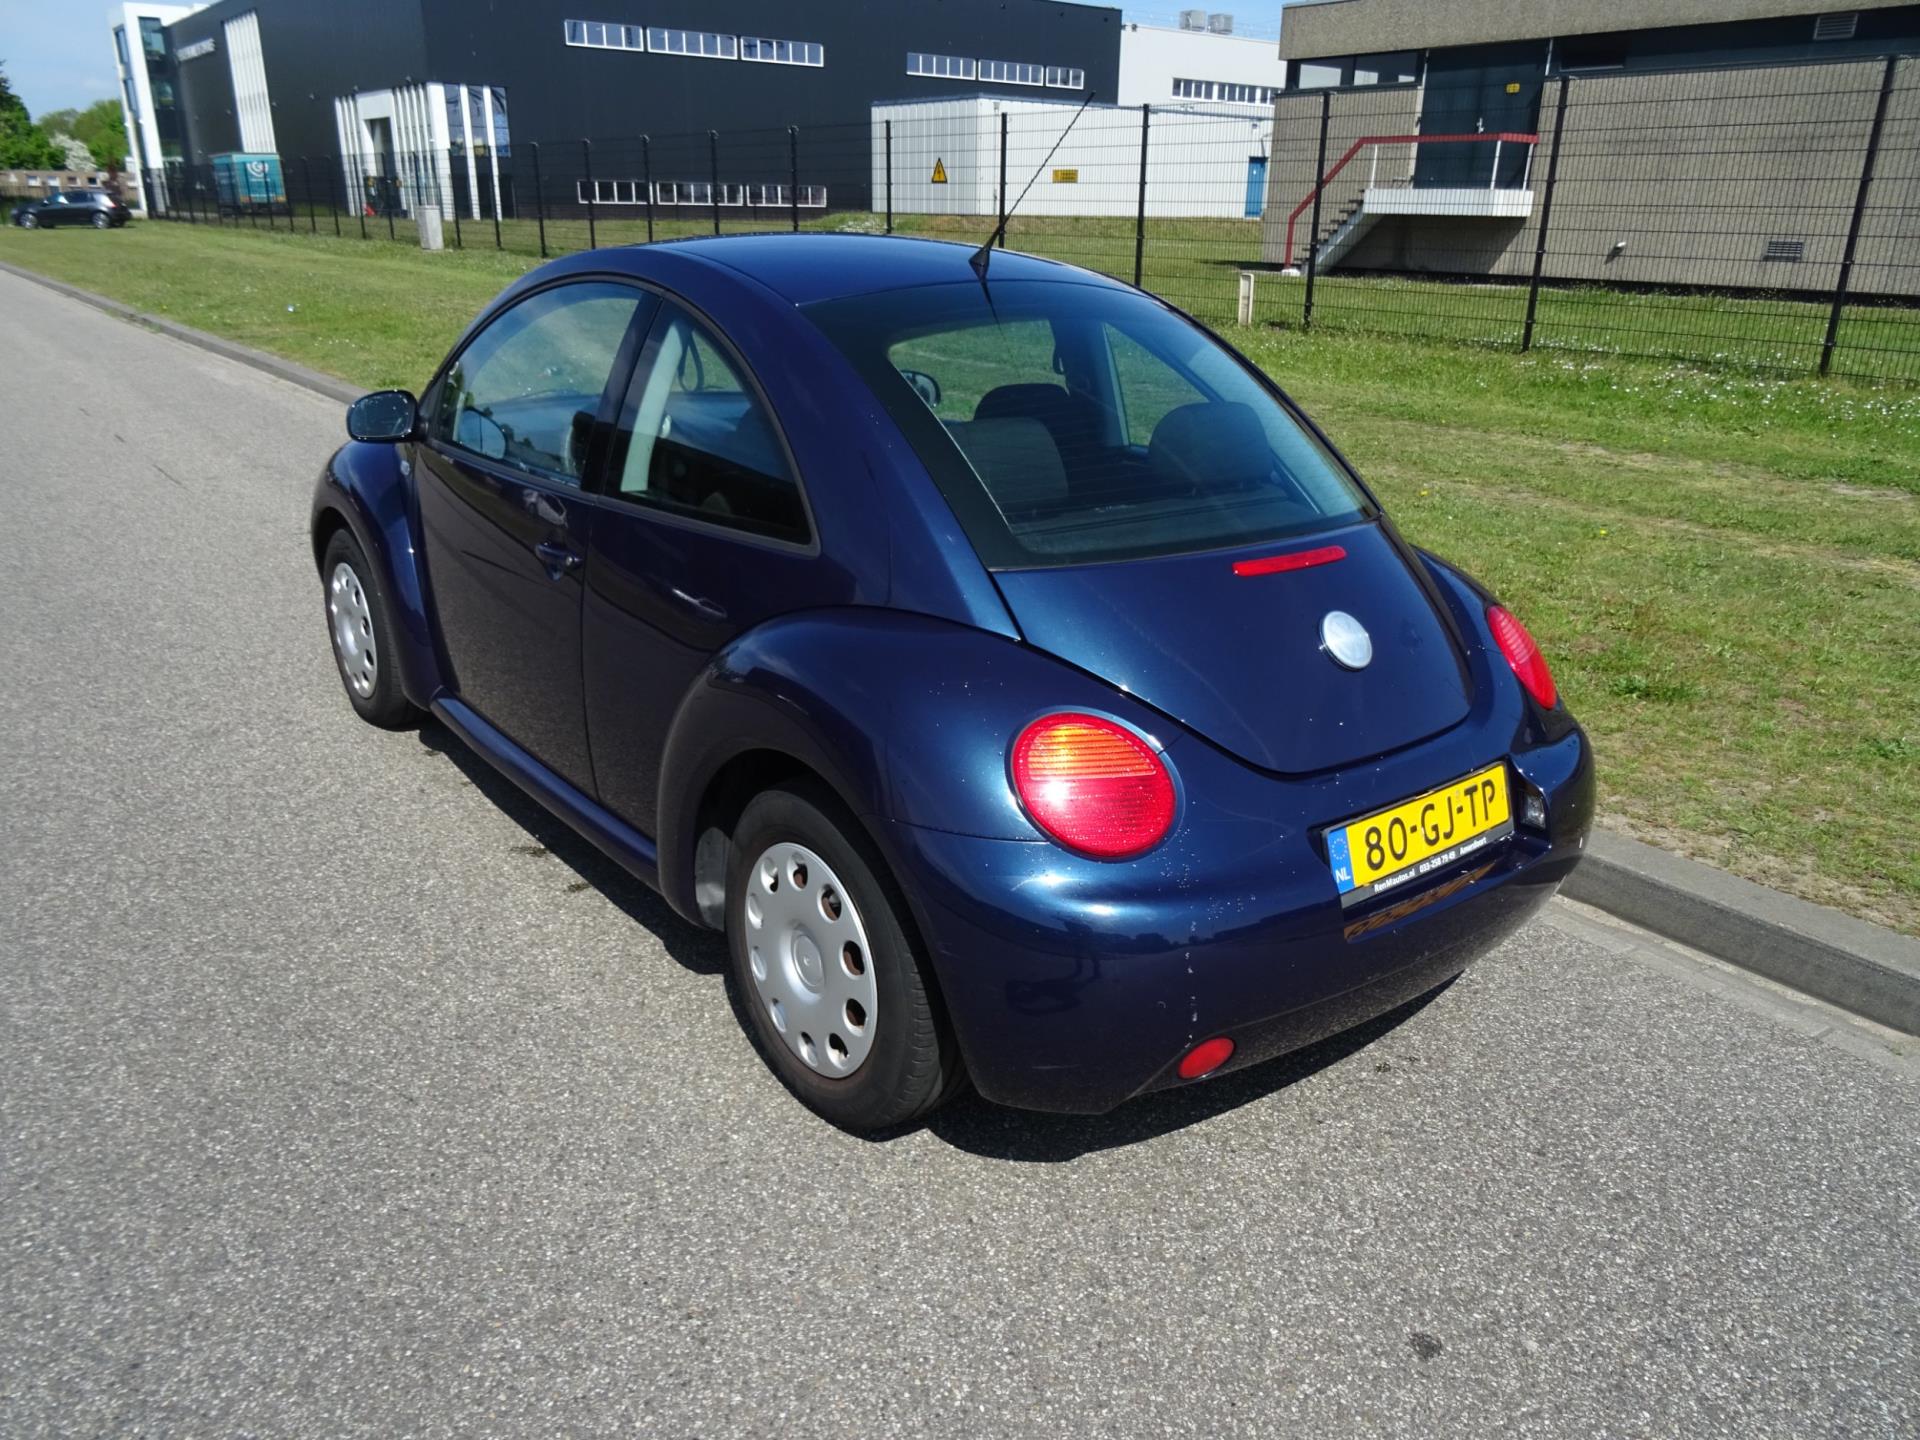 volkswagen-new-beetle-image4.jpg